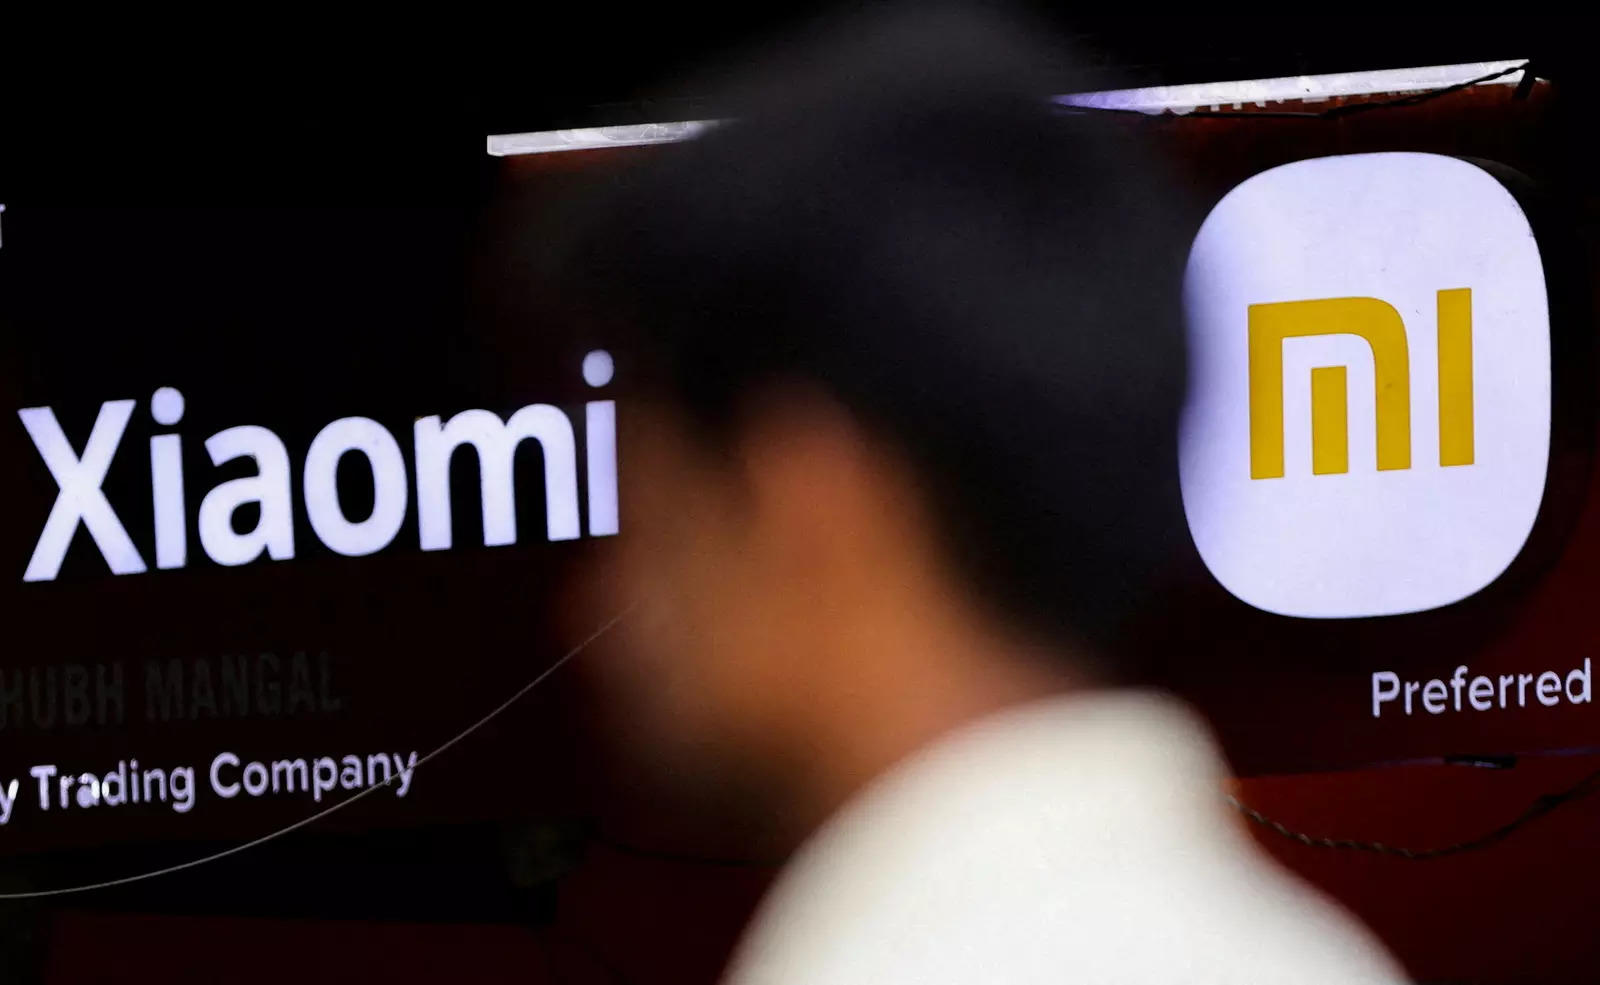     FOTO FILE: Seorang pria berjalan melewati logo Xiaomi, pembuat elektronik konsumen Cina, di luar sebuah toko di Mumbai, India 11 Mei 2022. REUTERS/Francis Mascarenhas